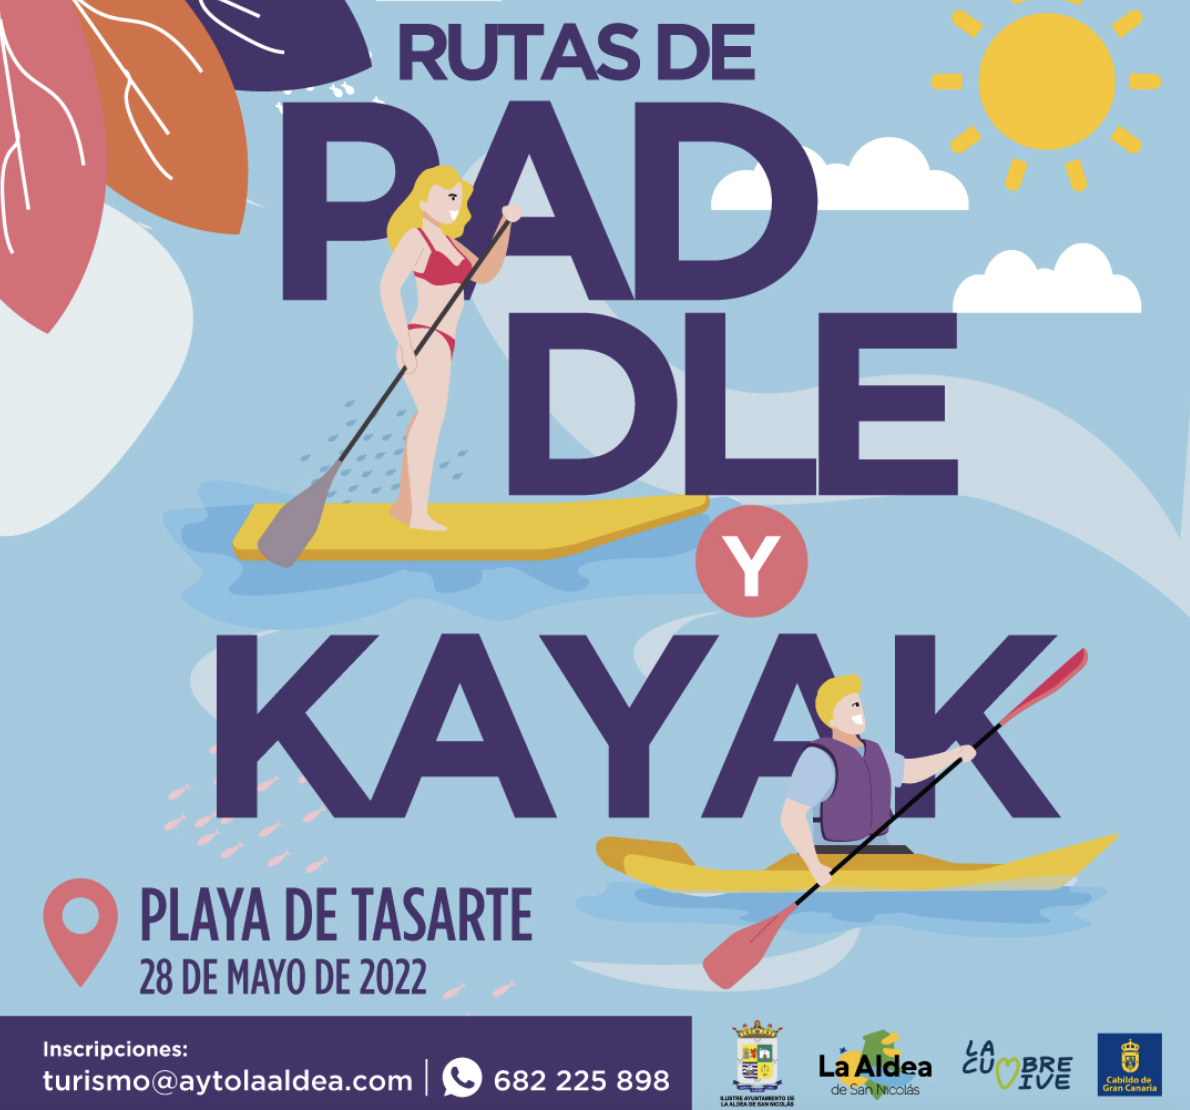 Comercio te invita a una actividad de Paddel y Kayak en la playa de Tasarte el sábado 28 de mayo